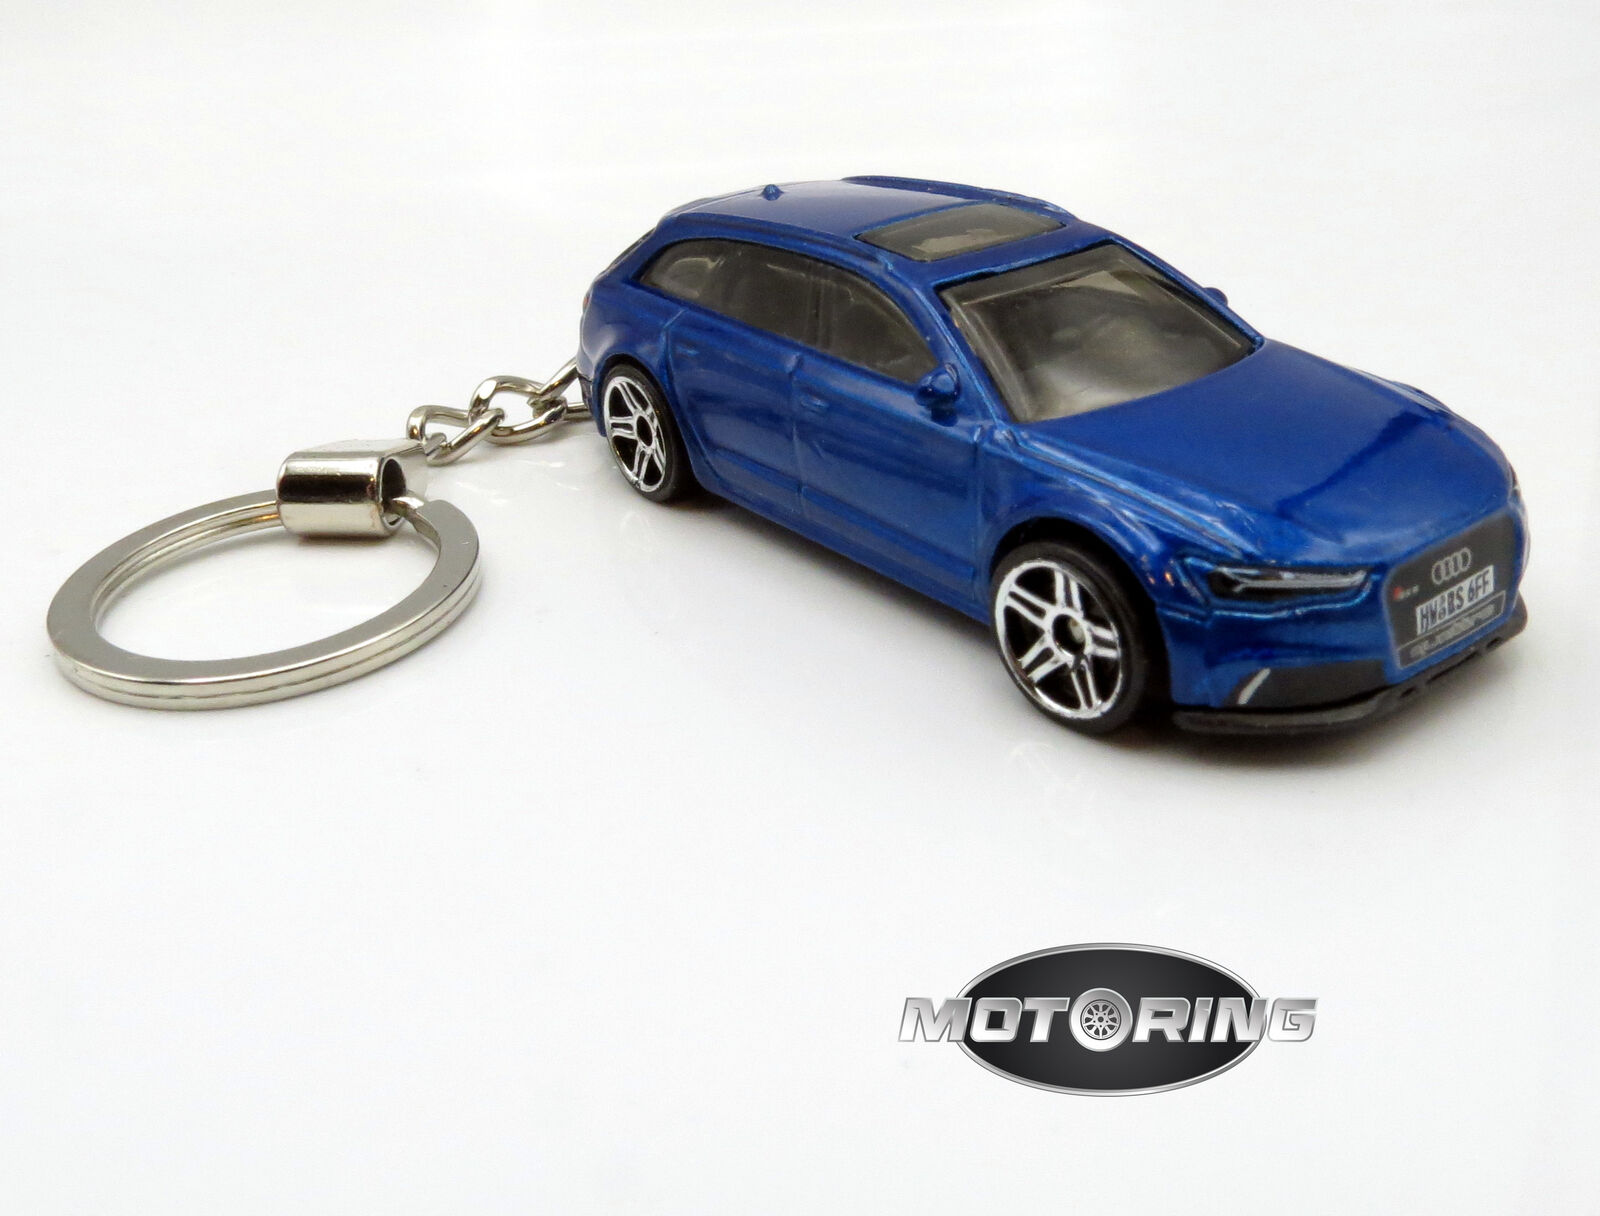 2017 '17 Audi RS 6 Avant Blue Car Rare Novelty Keychain 1:64 Diecast